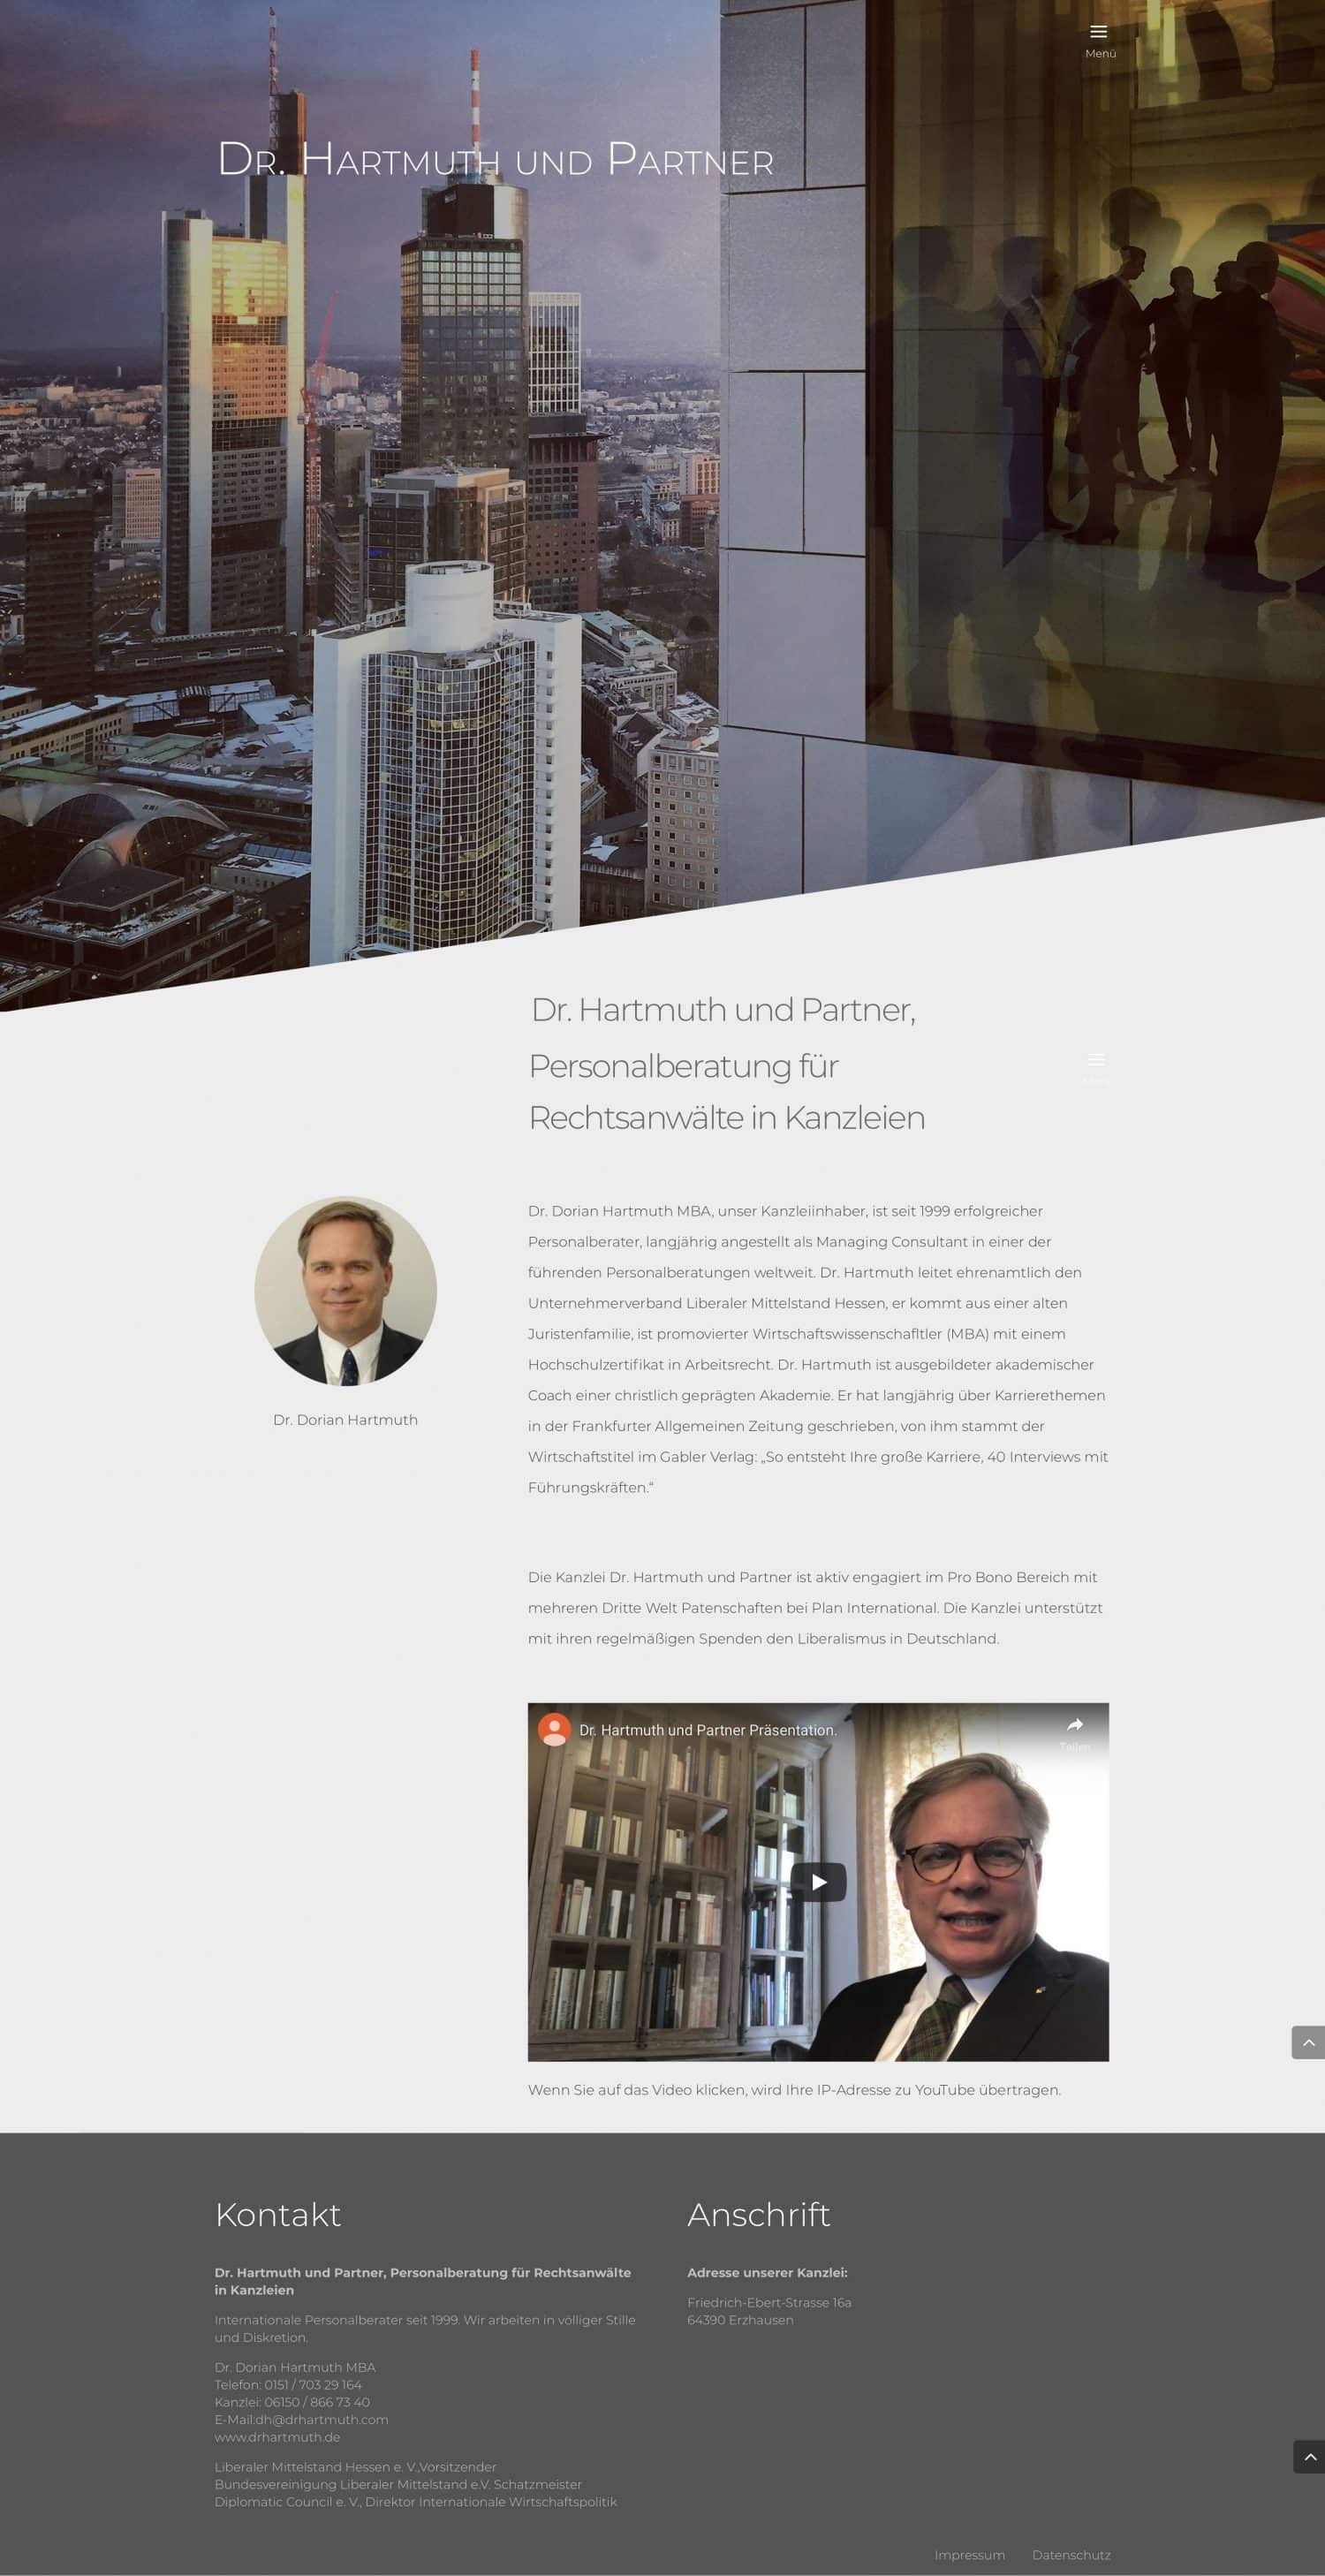 Webdesign und Programmierung der Homepage von Dr. Hartmuth und Partner, Personalberatung für Rechtsanwälte in Kanzleien durch Webdesigner Ronald Wissler